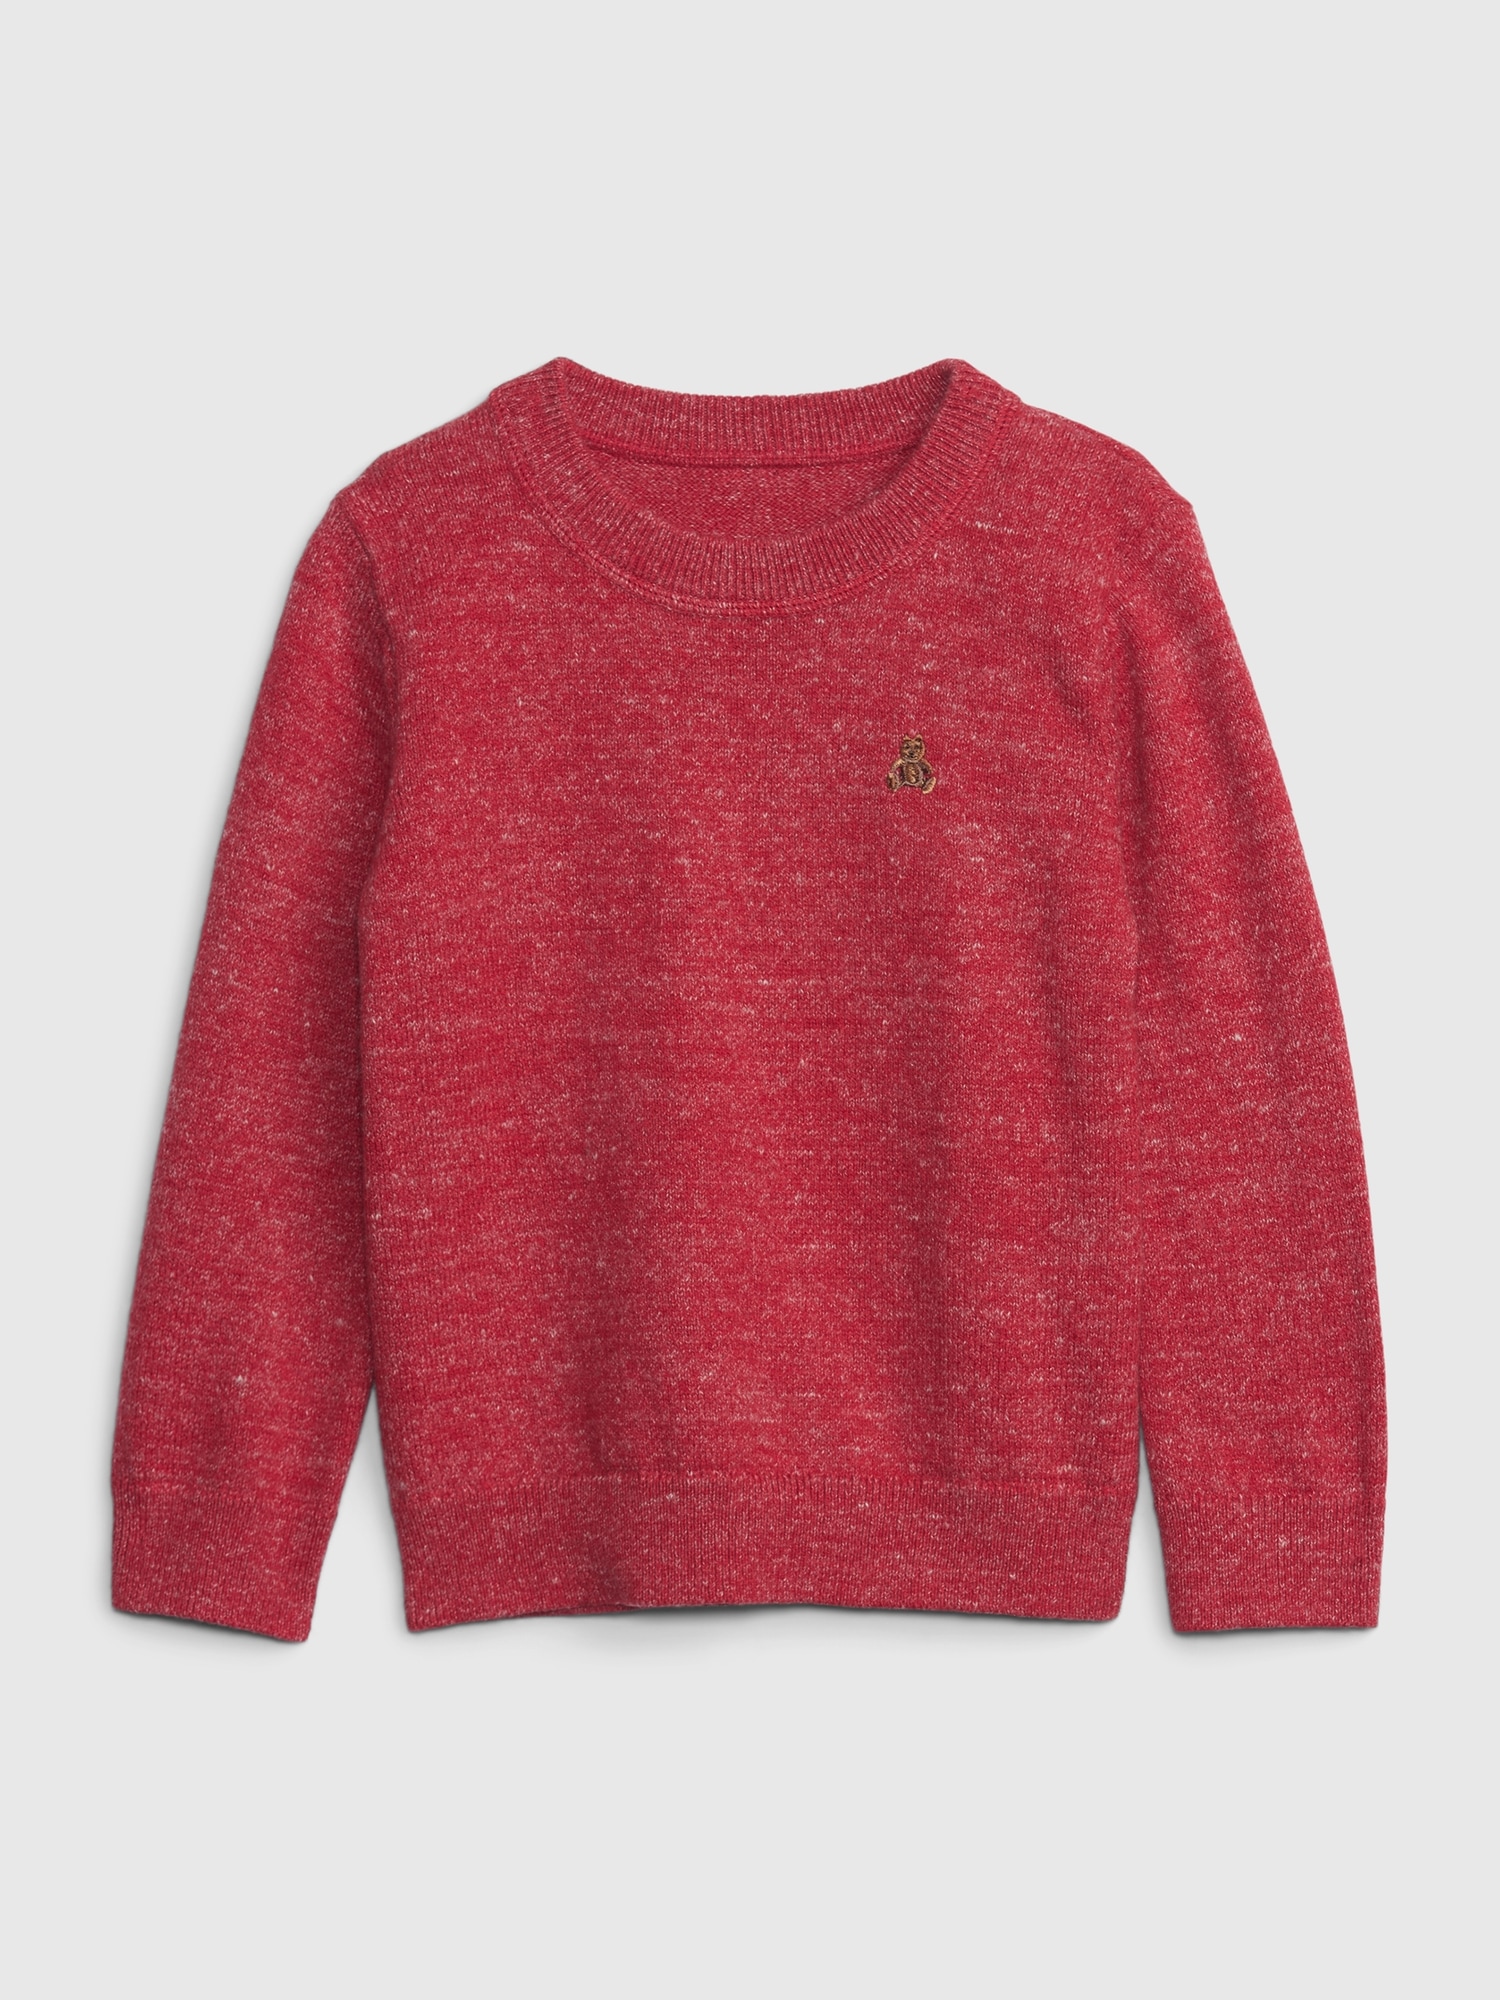 Toddler Crewneck Sweater | Gap